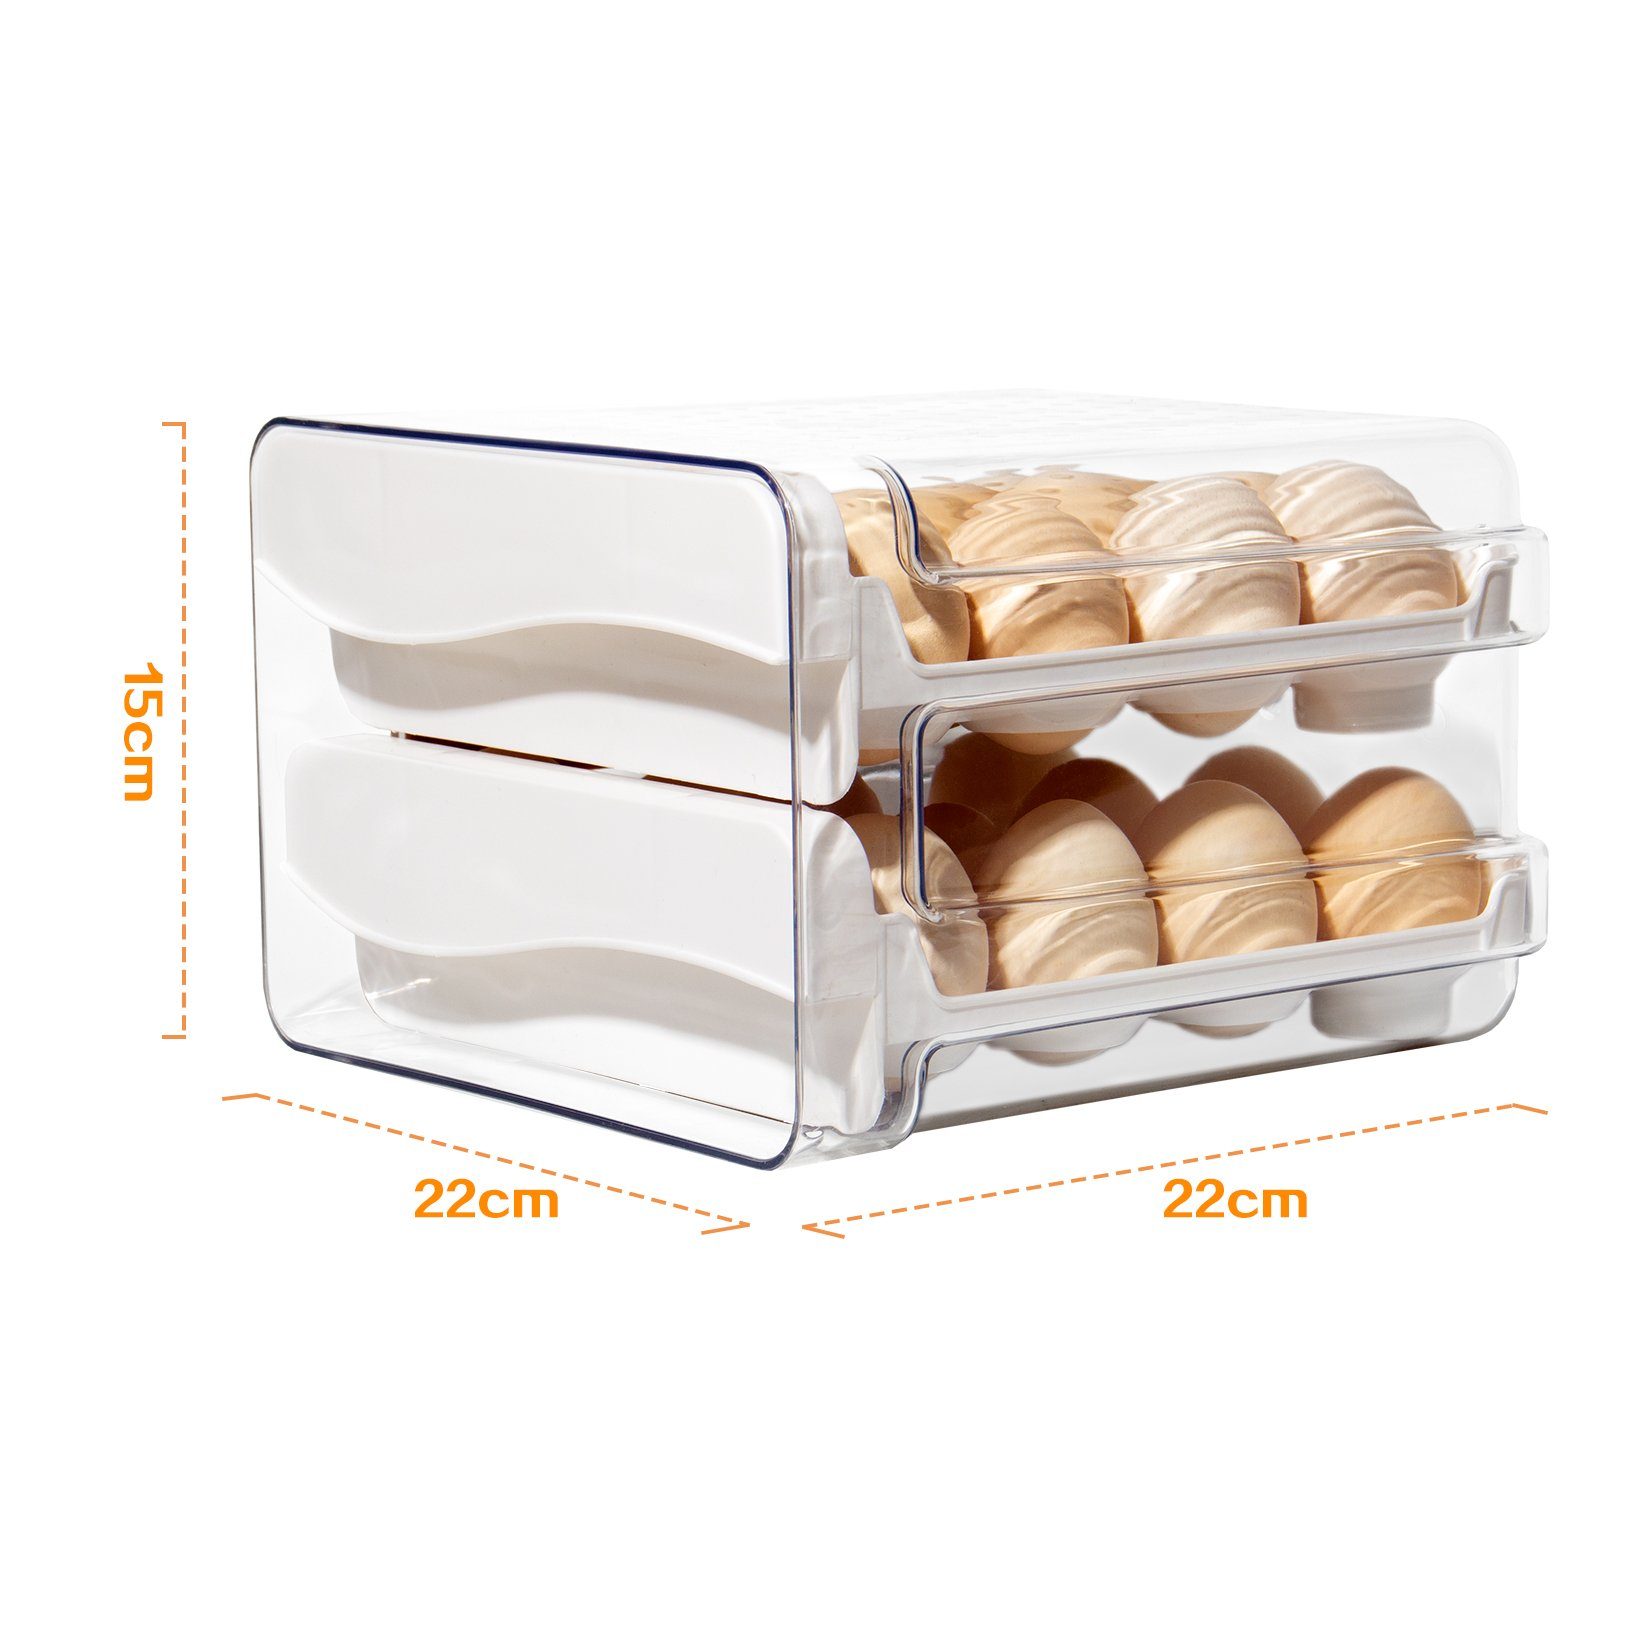 Zeitschaltuhr, Weiß, (STEG-232), für Doppelter Eier Eierkarton 32 Zedelmaier eier, große Eierkorb Aufbewahrung mit Kühlschrank Eierbox Eierbehälter